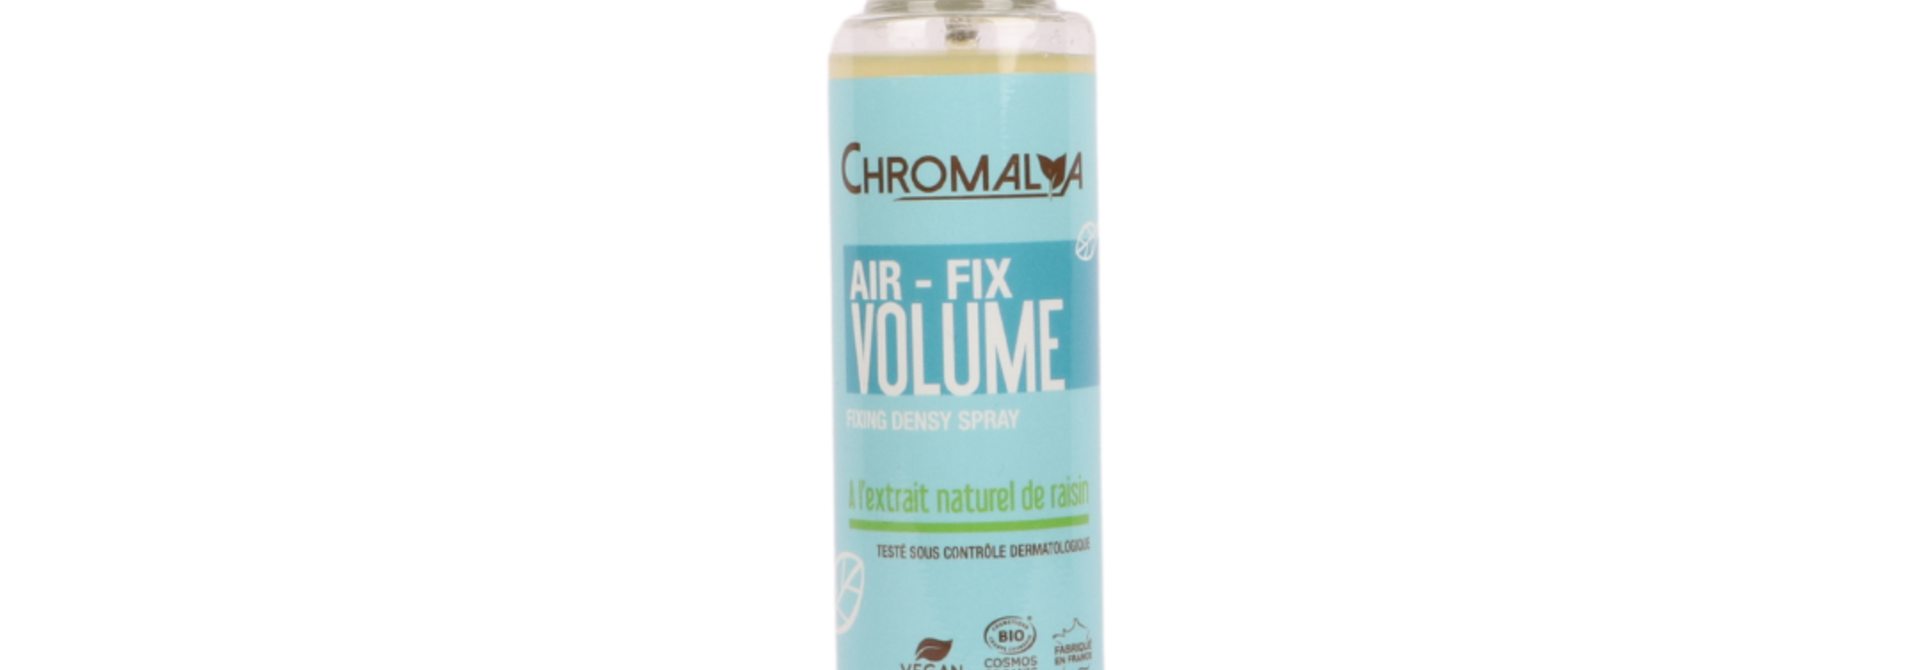 Air-Fix Volume 150ml